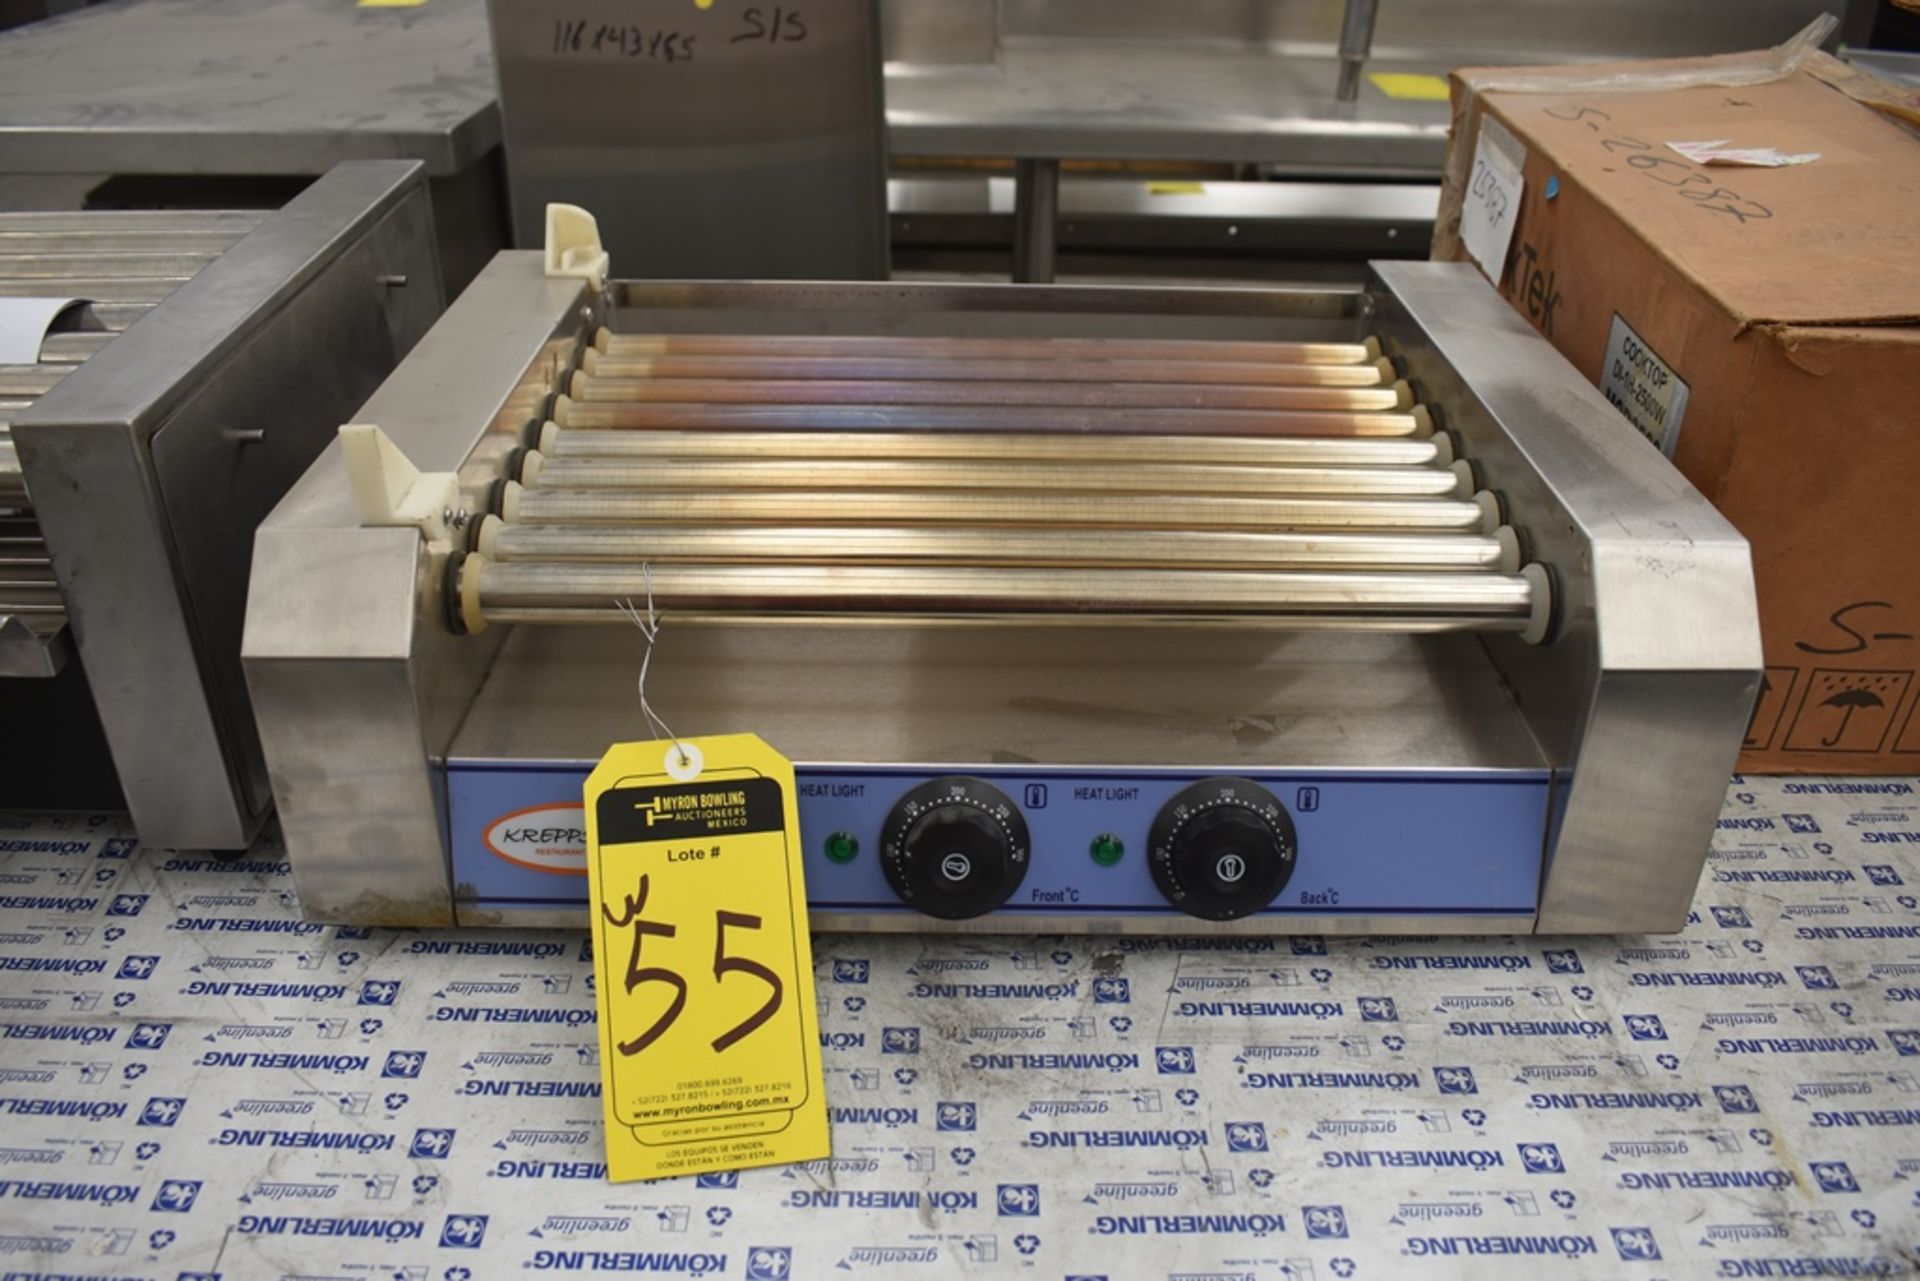 NUEVOS Roller Para Salchicha De Hot Dog eléctrico (Hot Dog Grill) Marca Kreppsland, Modelo Cz-9,110v